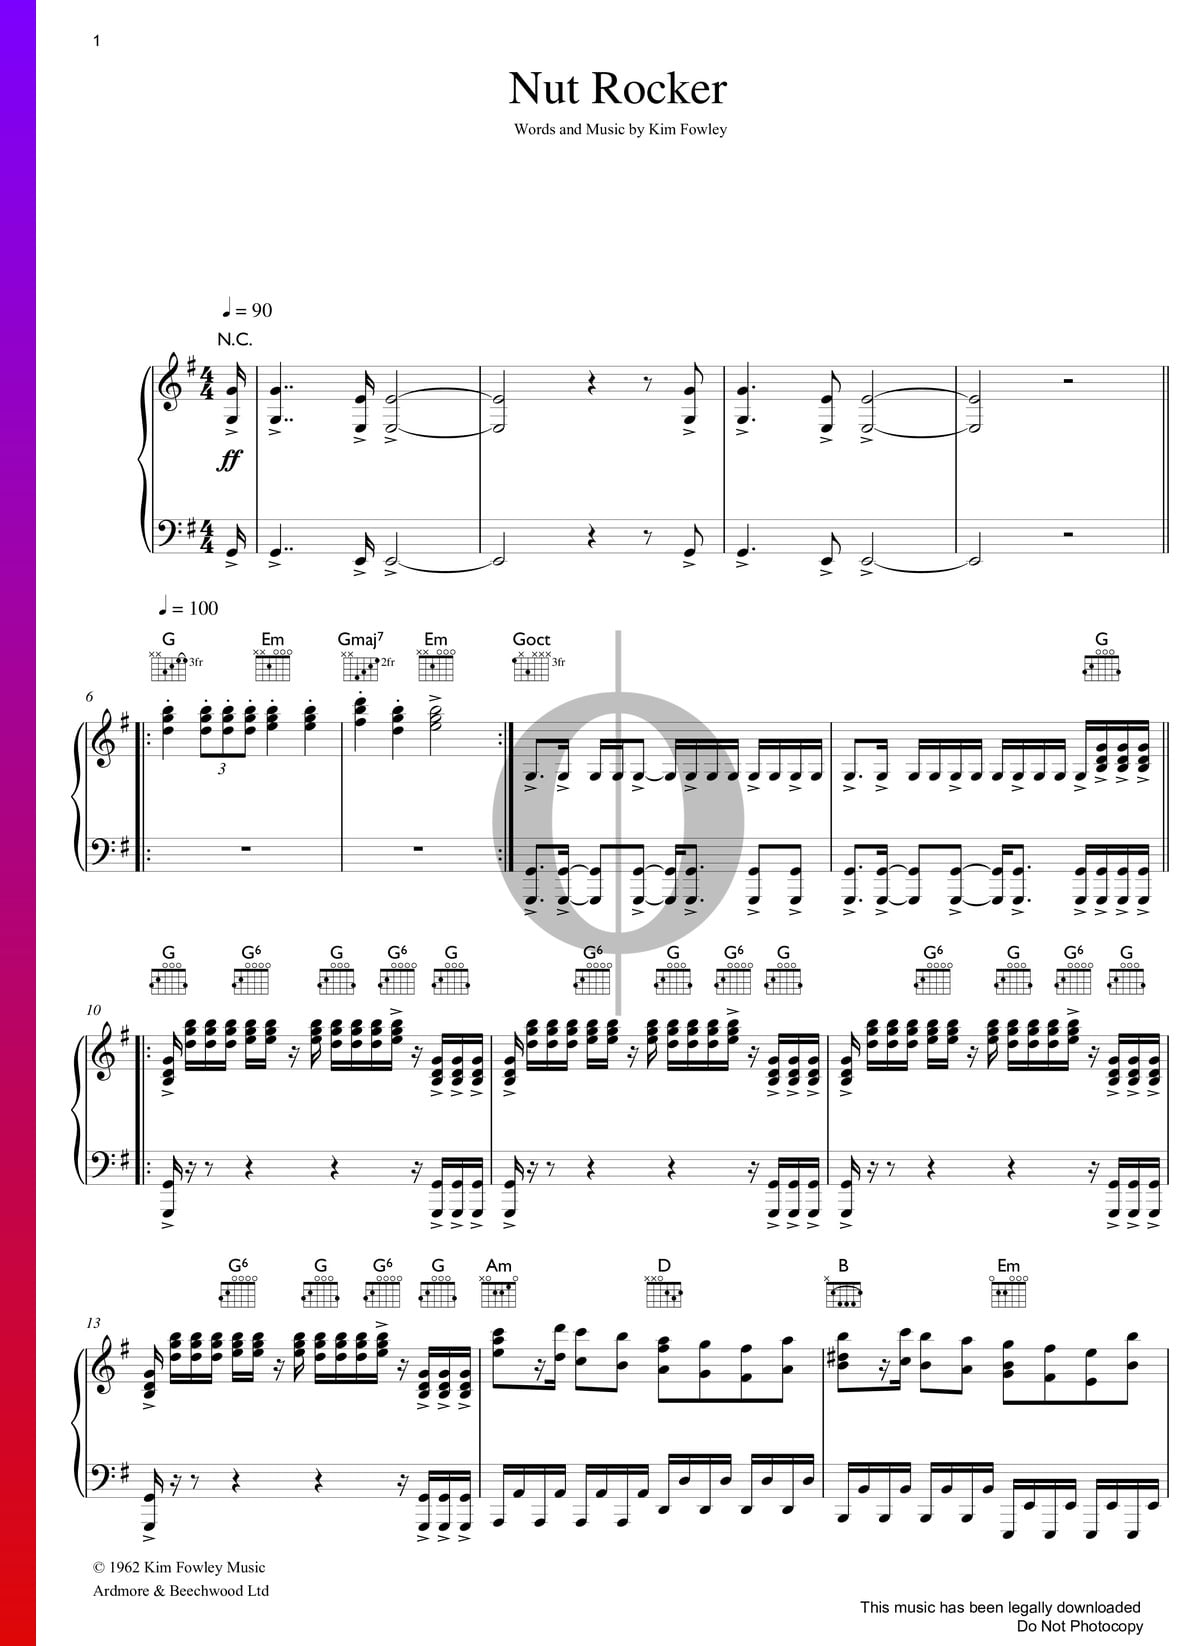 Bumble boogie sheet music pdf